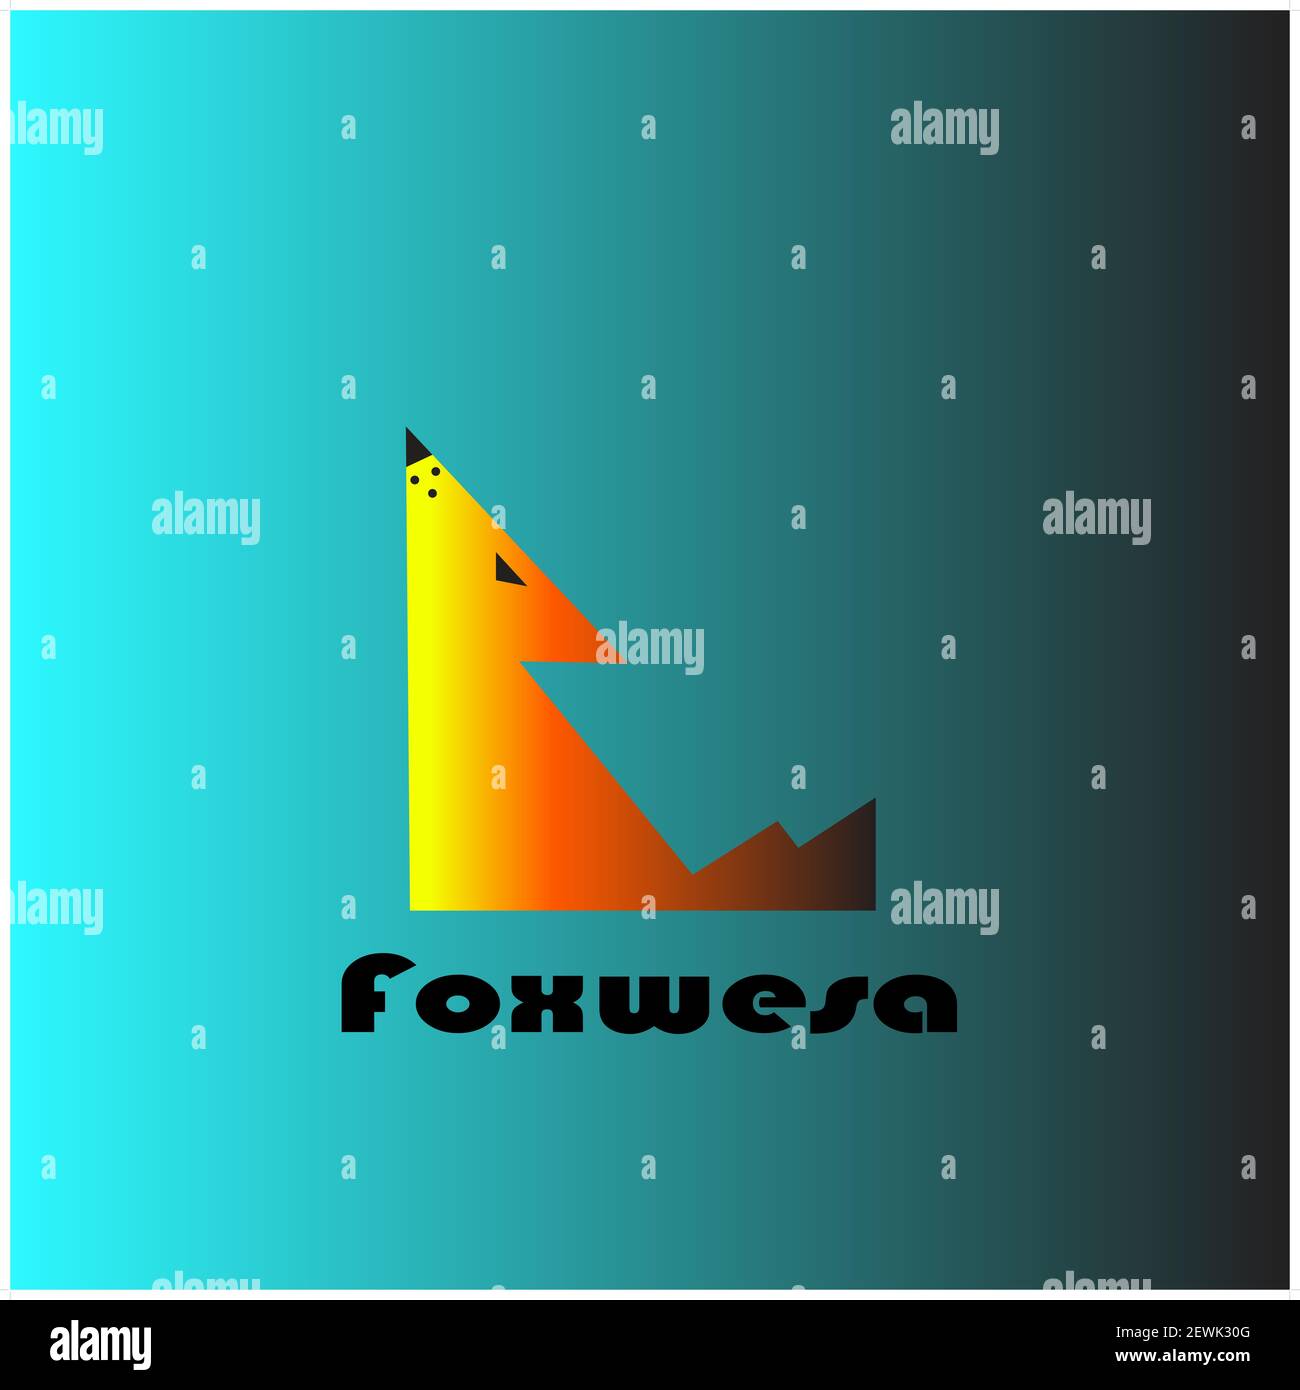 Foxwesa logo on gardient sky-blue background Stock Photo